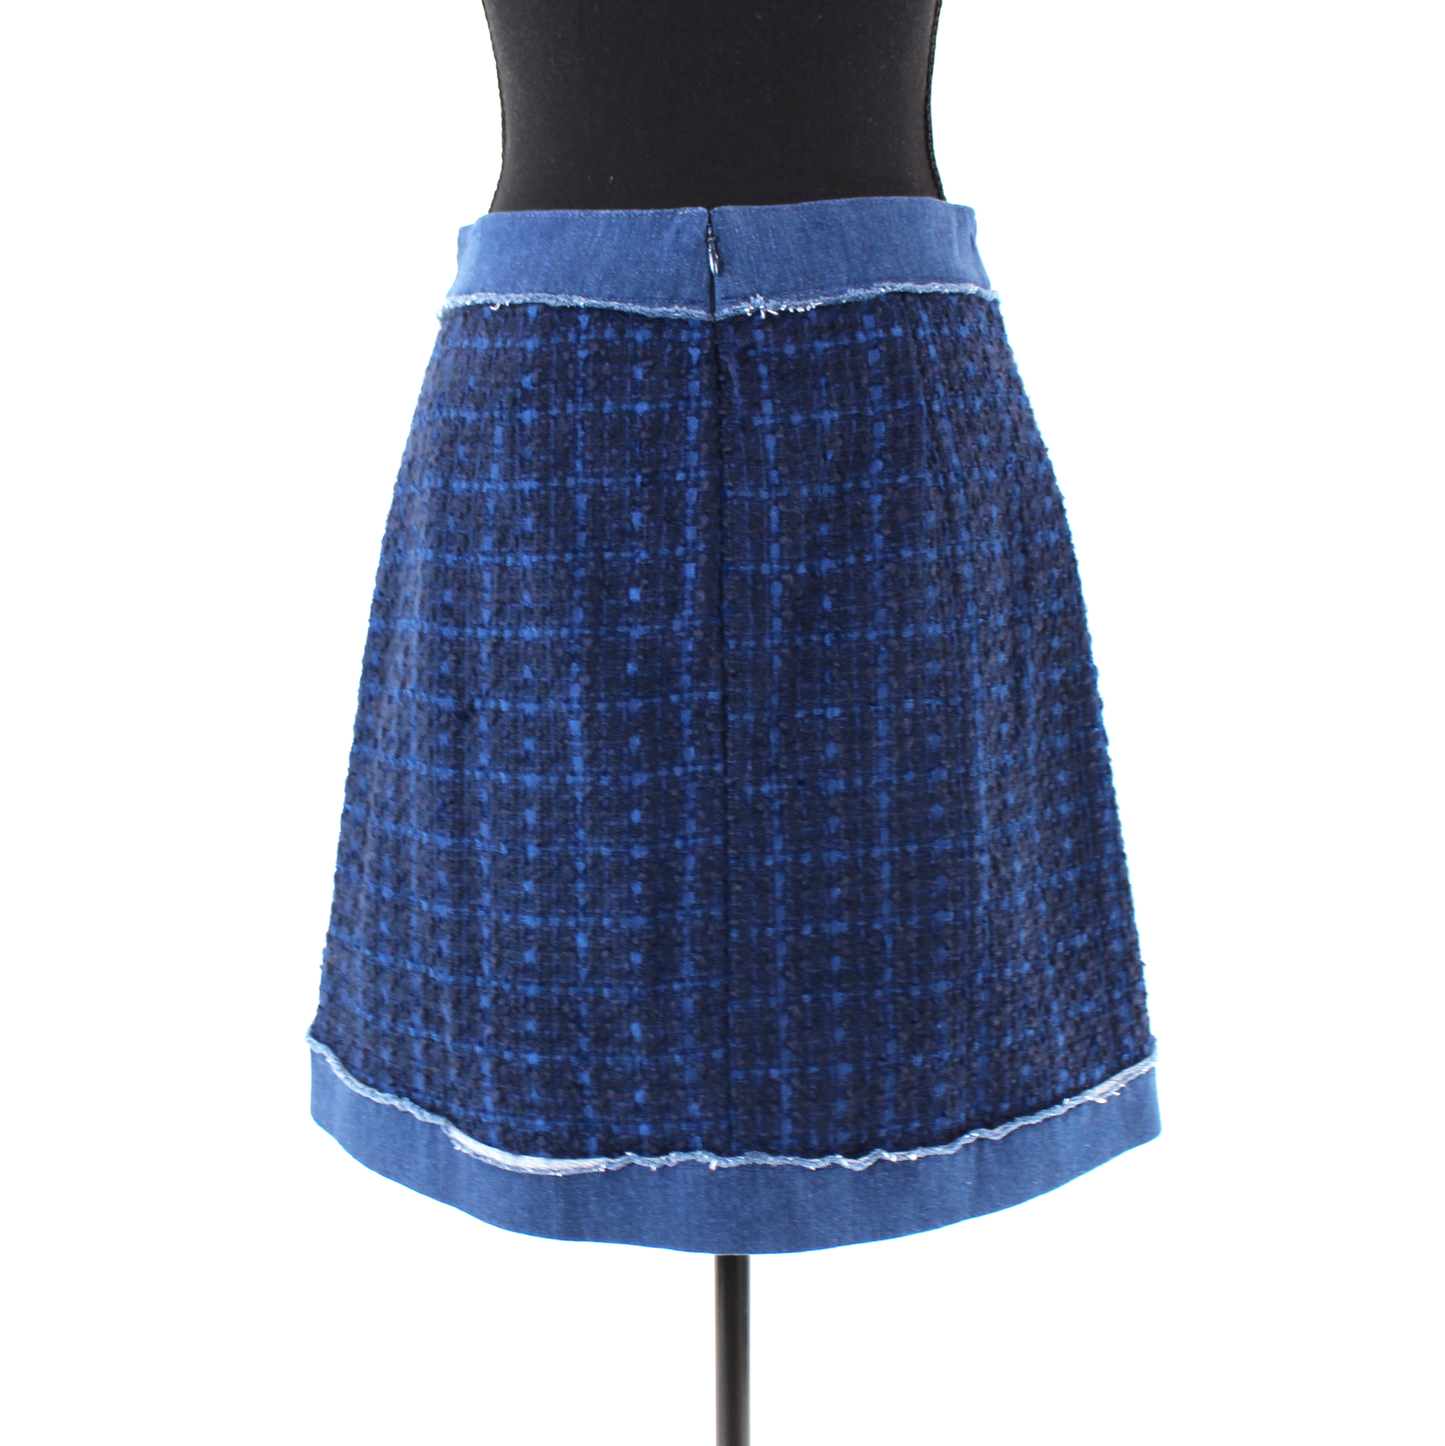 Kate Spade Denim Tweed Skirt